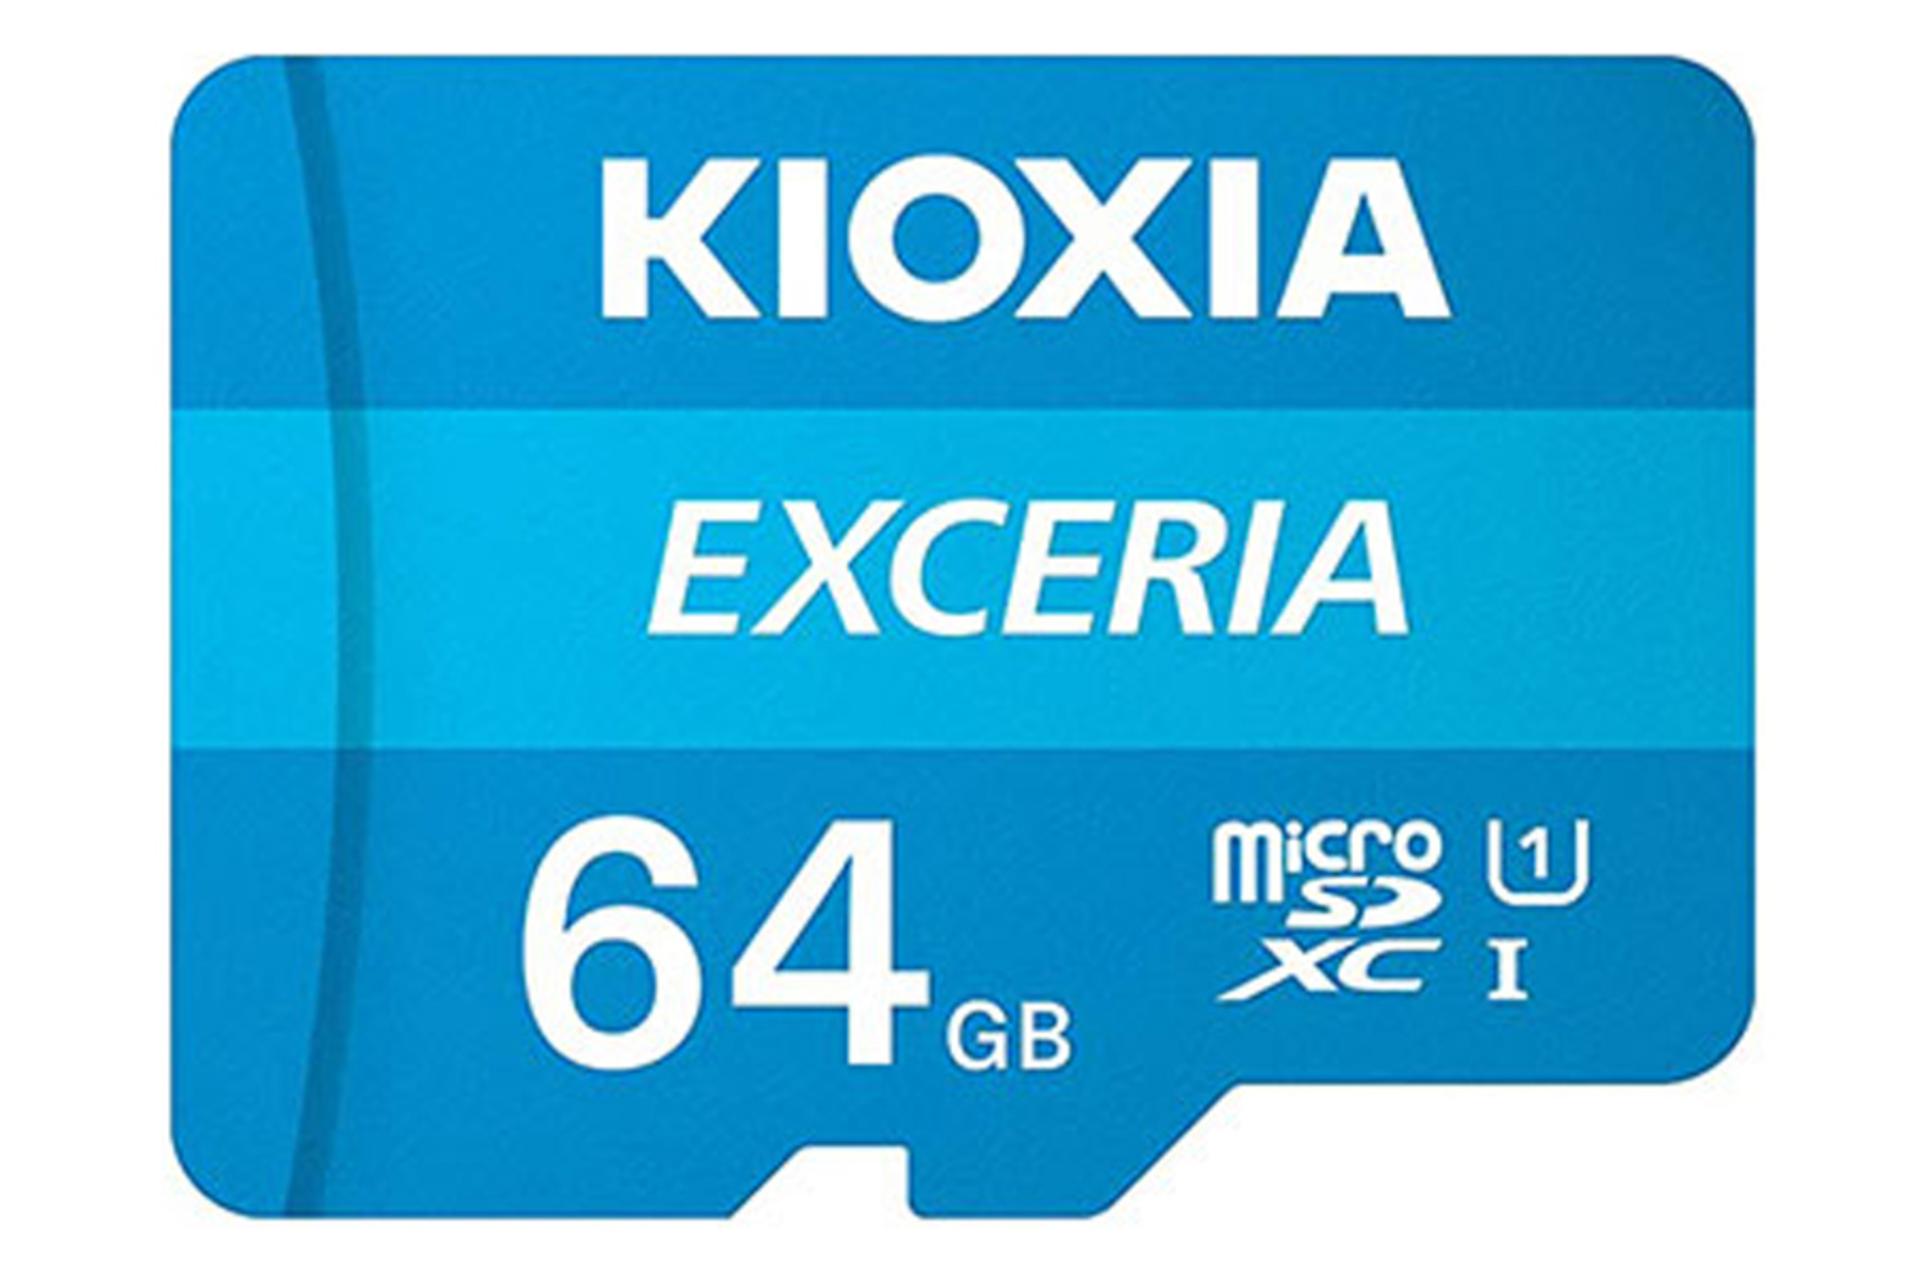 کارت حافظه کیوکسیا microSDXC با ظرفیت 64 گیگابایت مدل EXCERIA کلاس 10